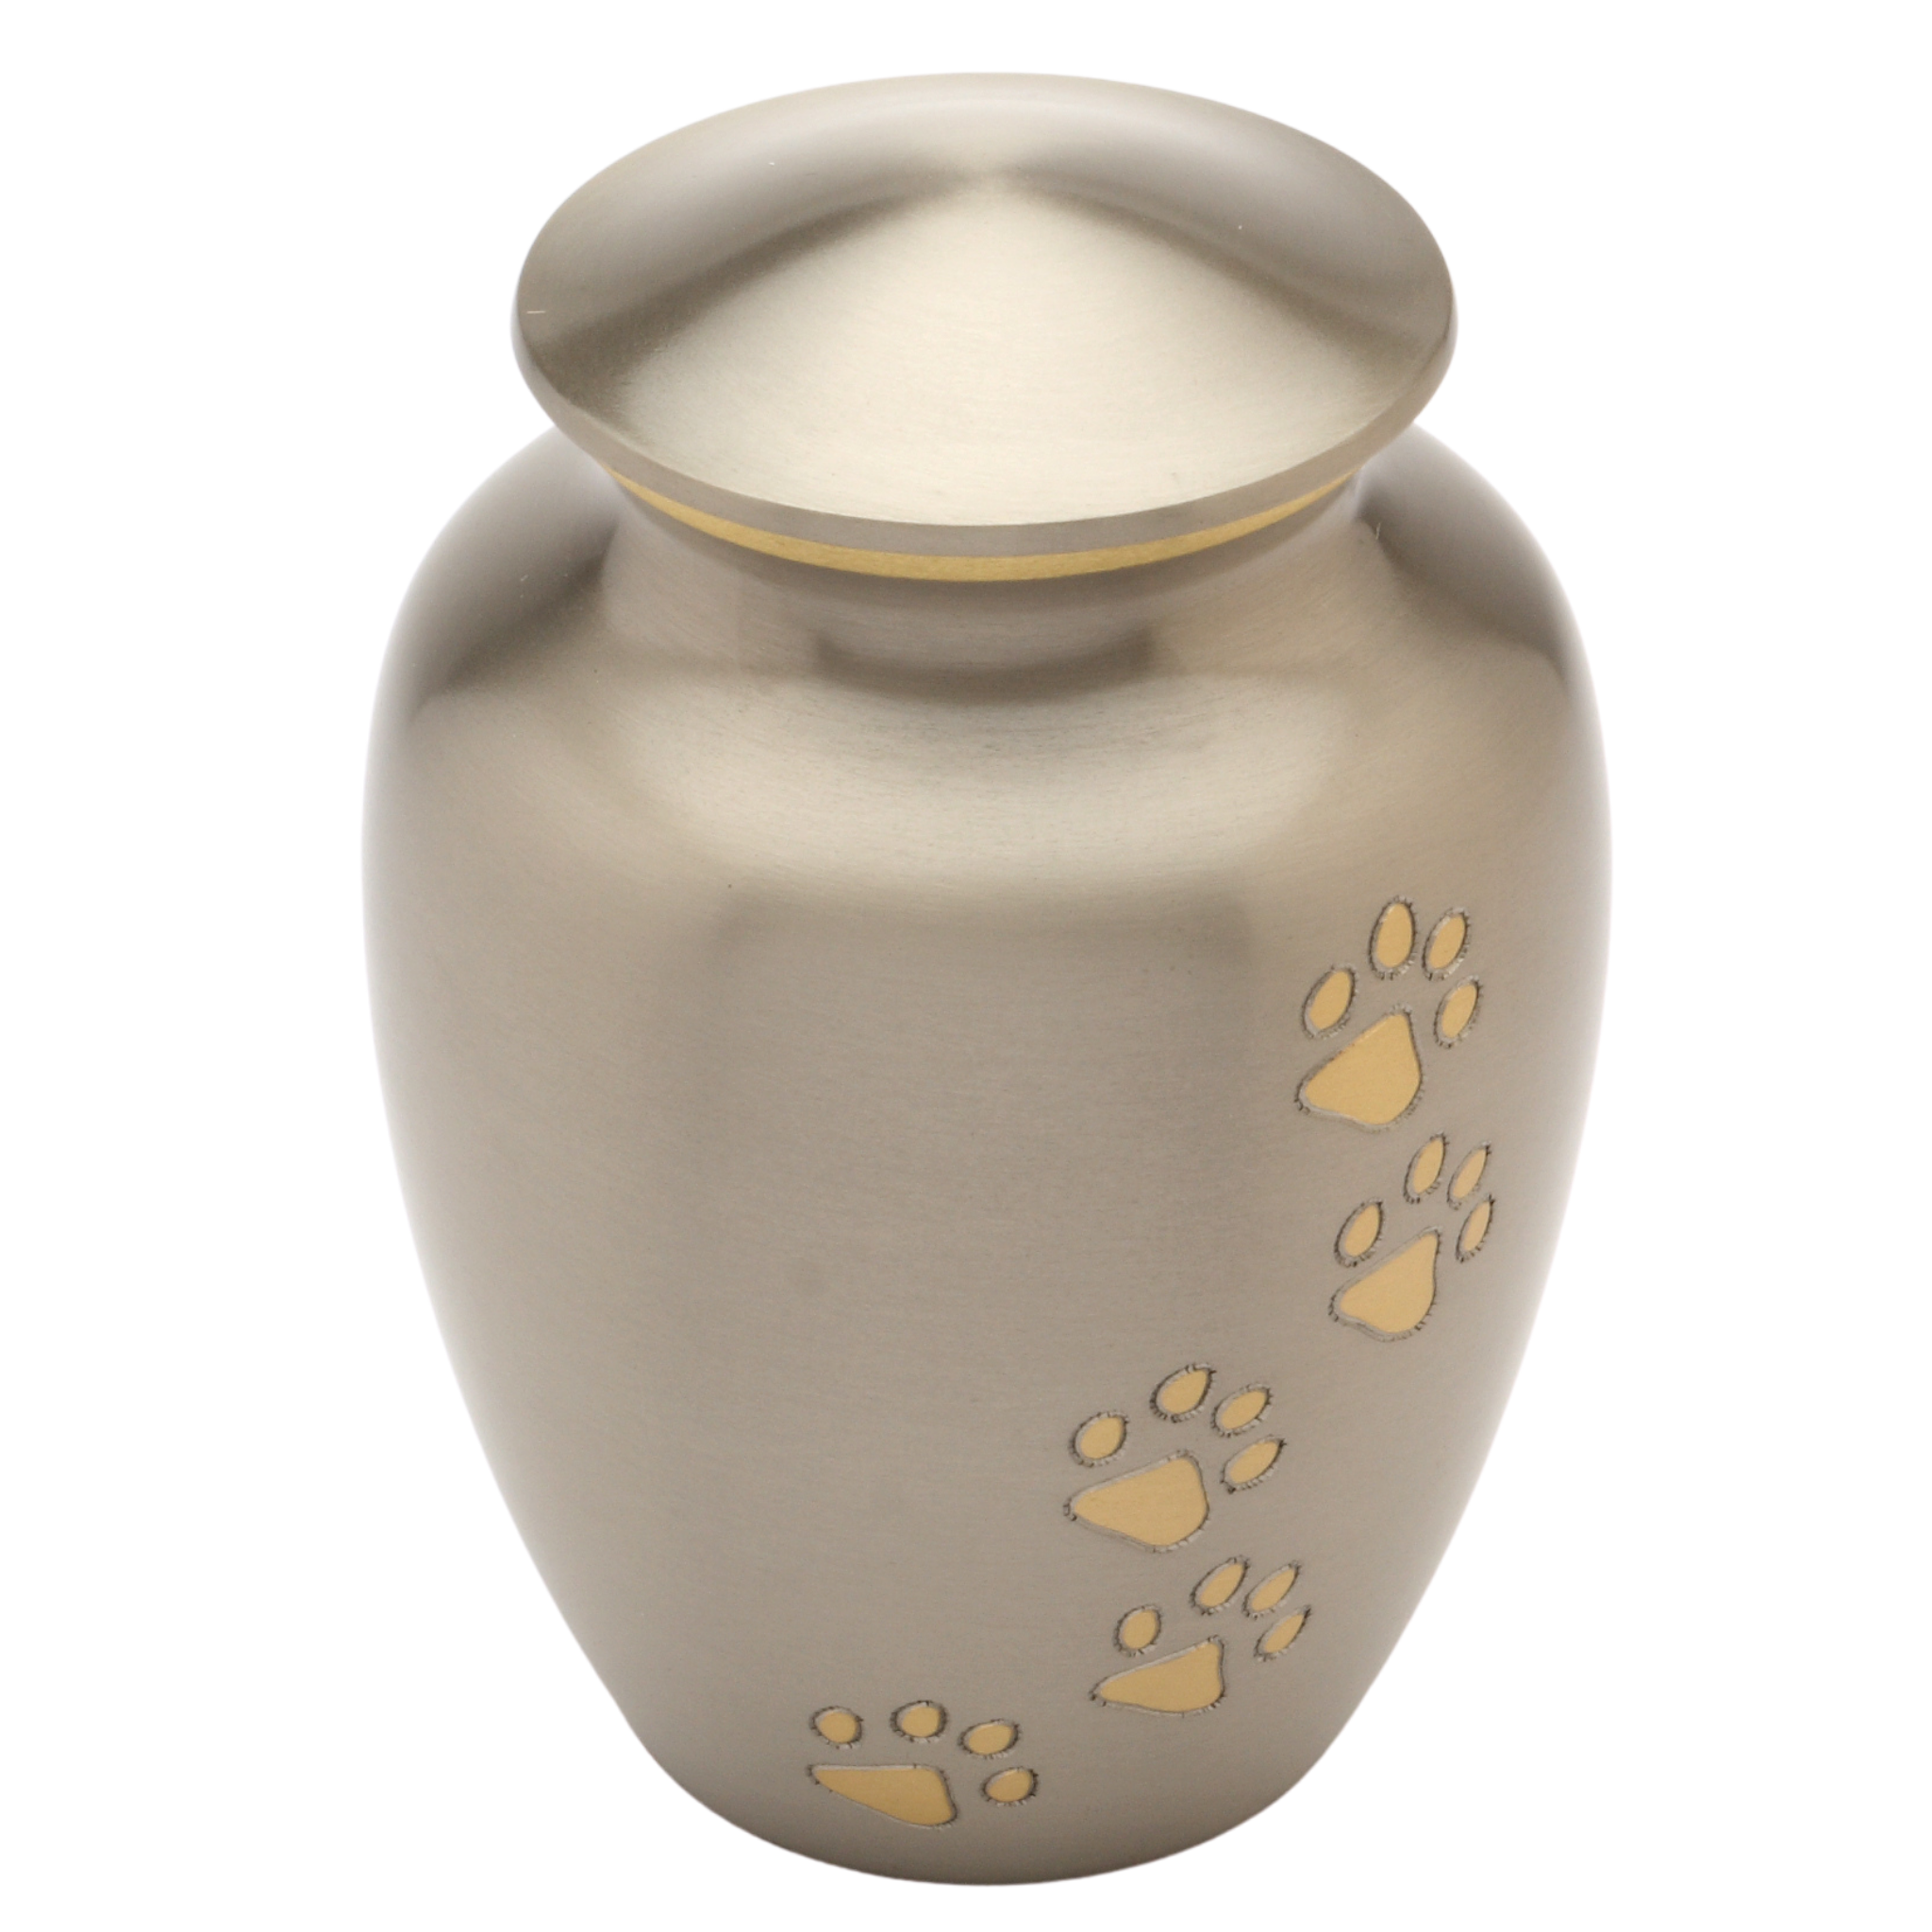 Matlock Pewter Cremation Ashes Pet Urn Range Urns UK